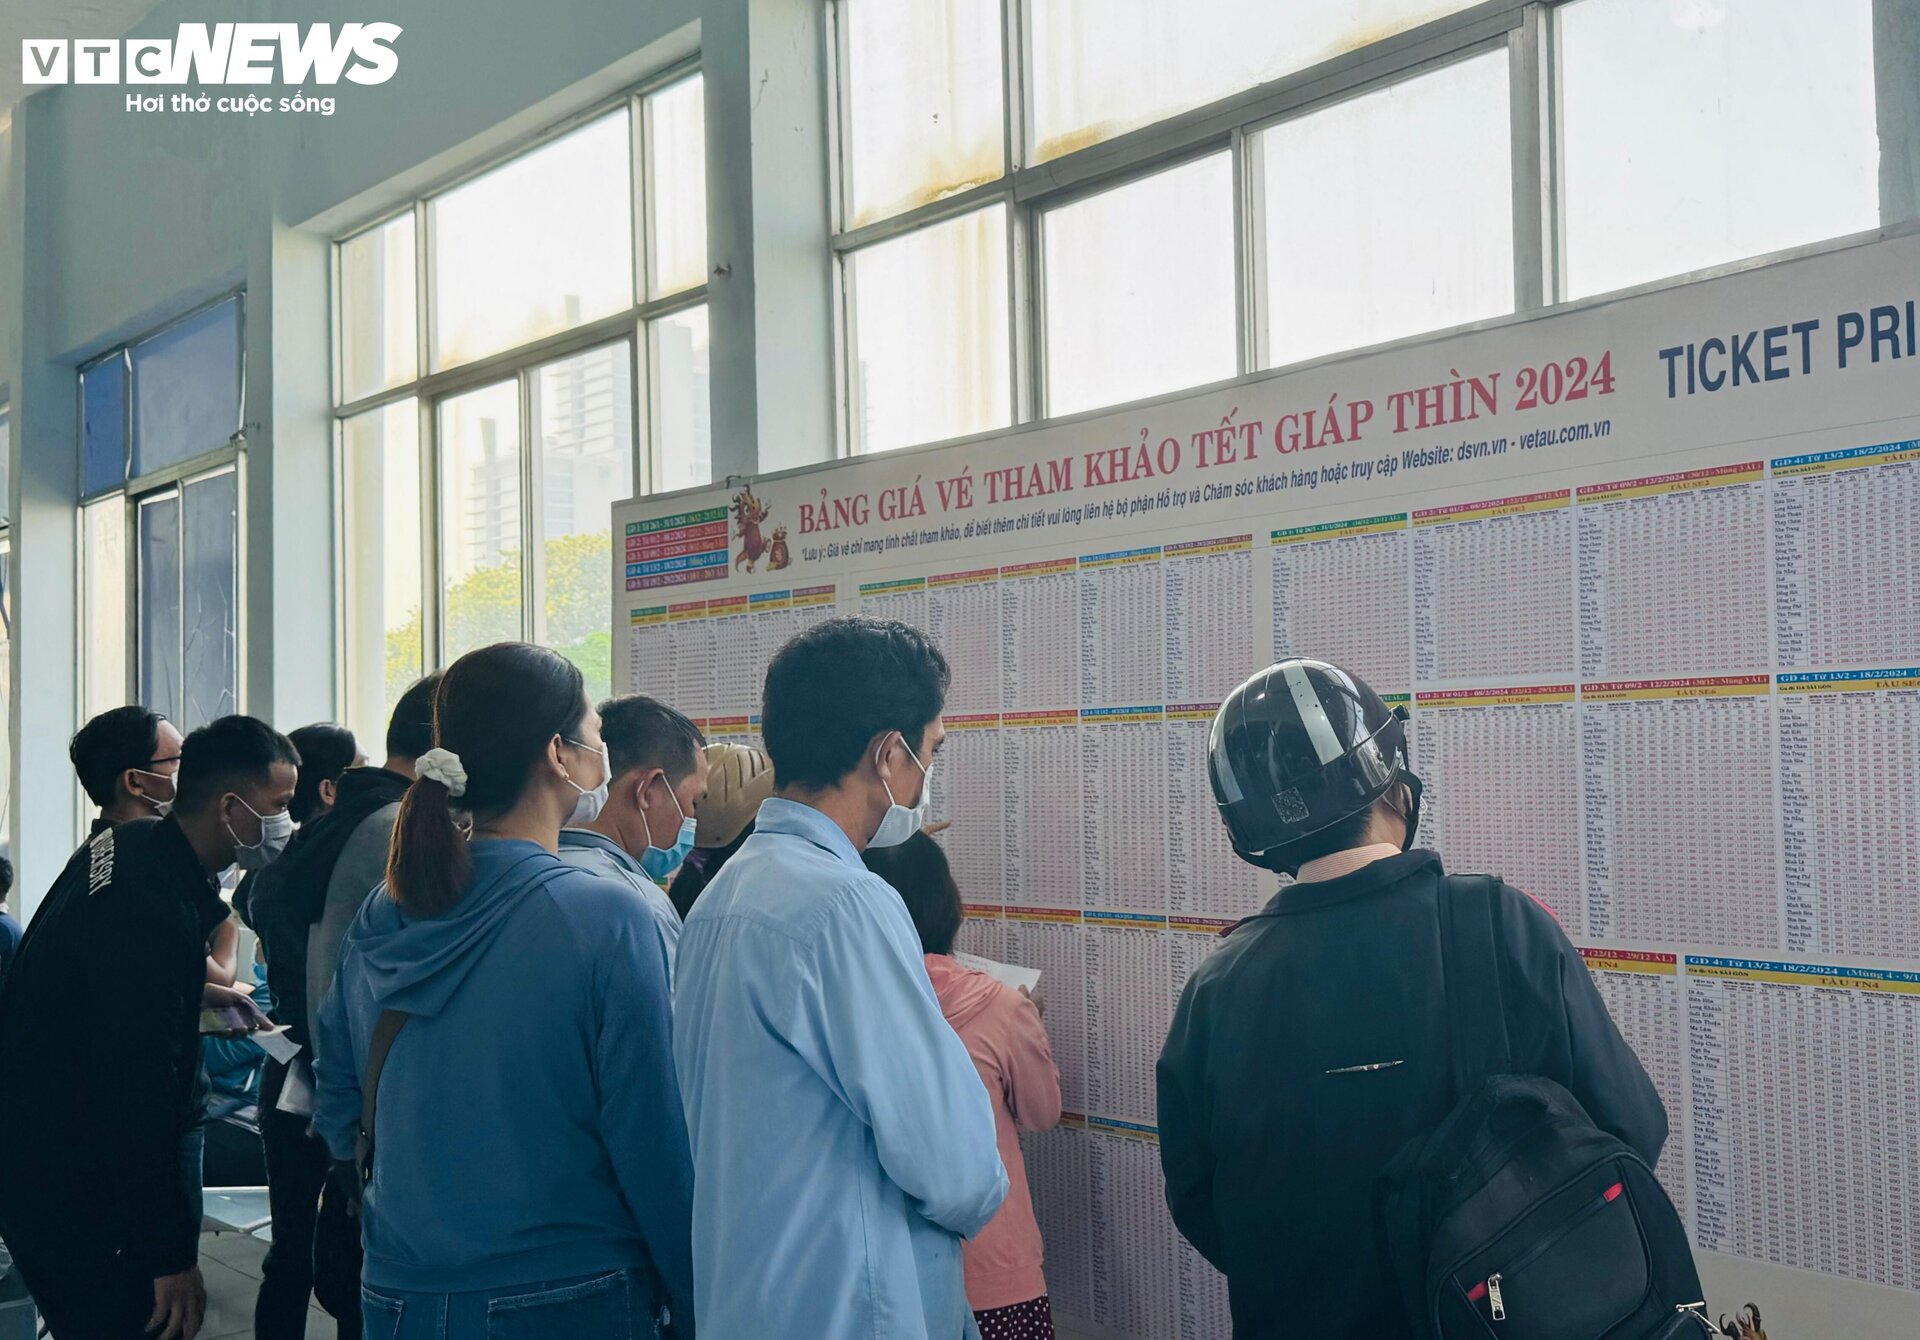 Ga Sài Gòn ngày đầu mở bán vé Tết, người dân mua vé dễ dàng - 13